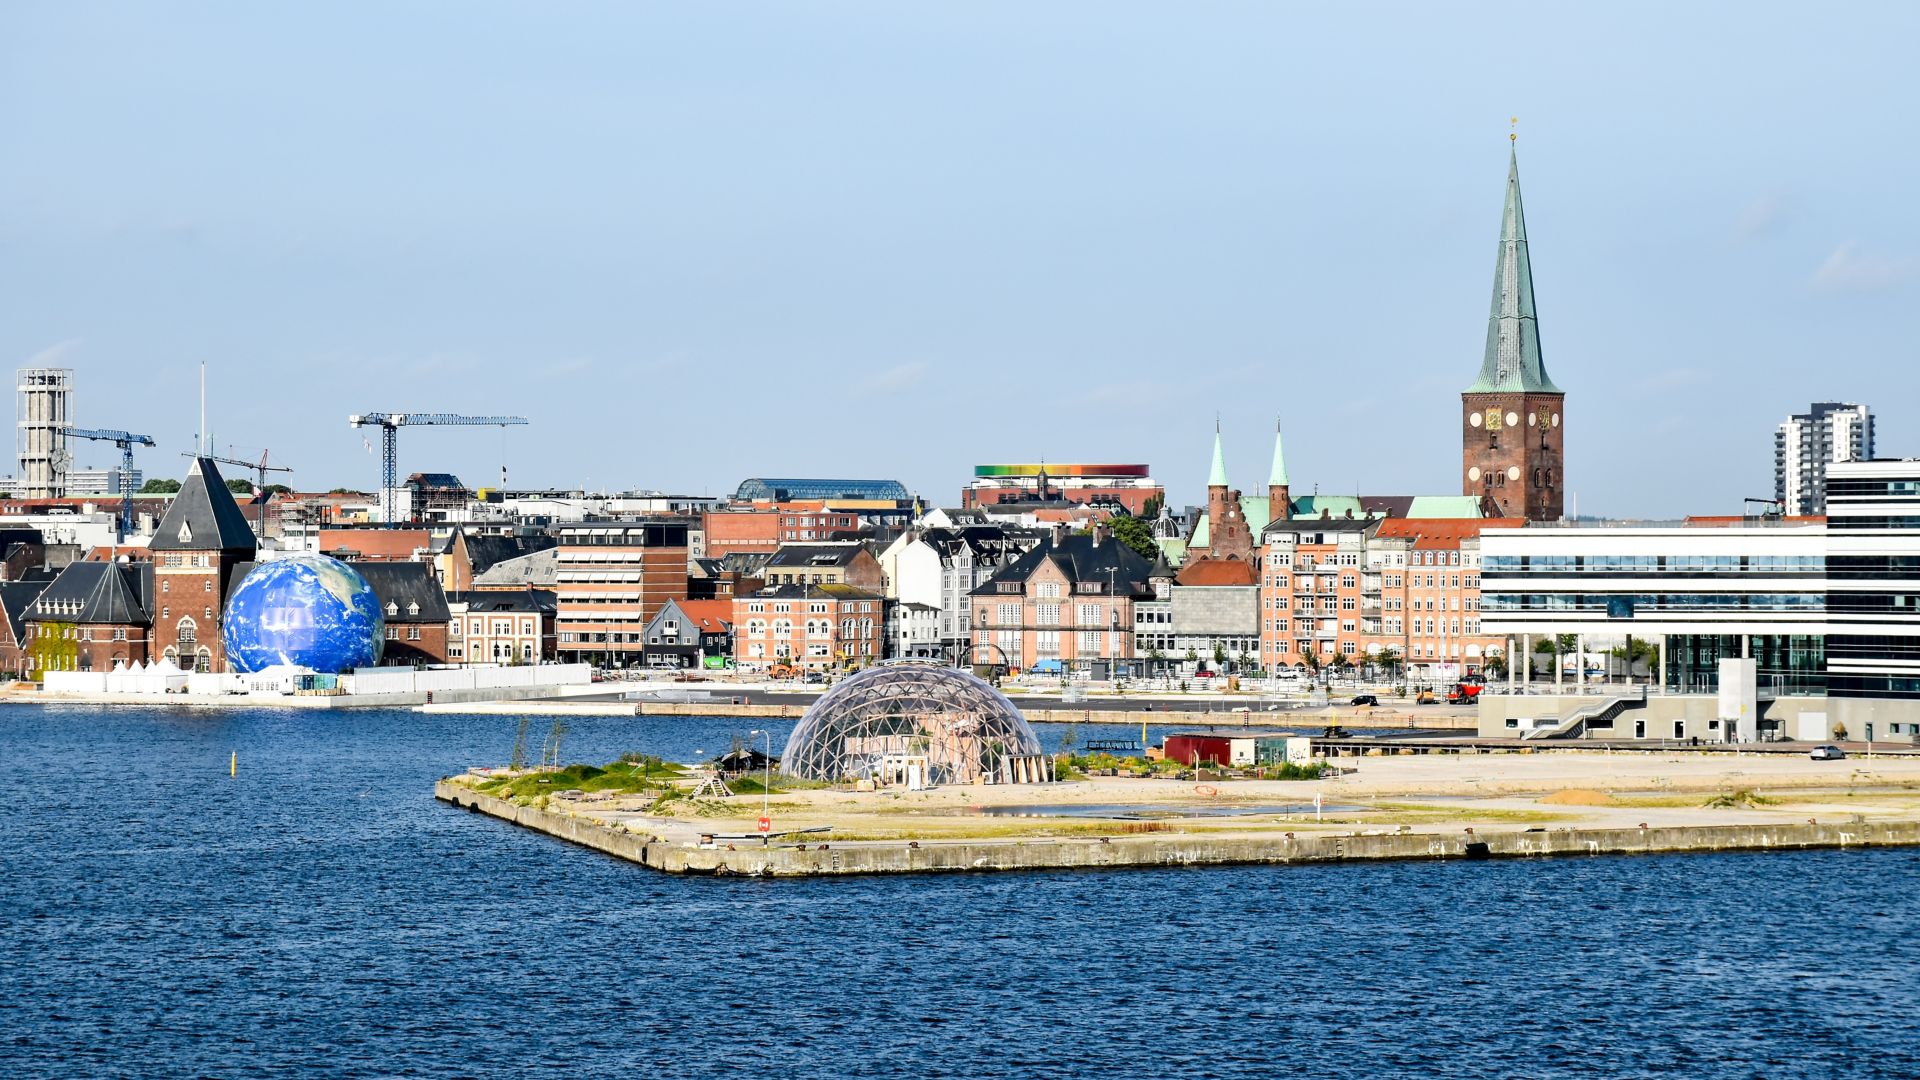 Bybillede af Aarhus i Danmark